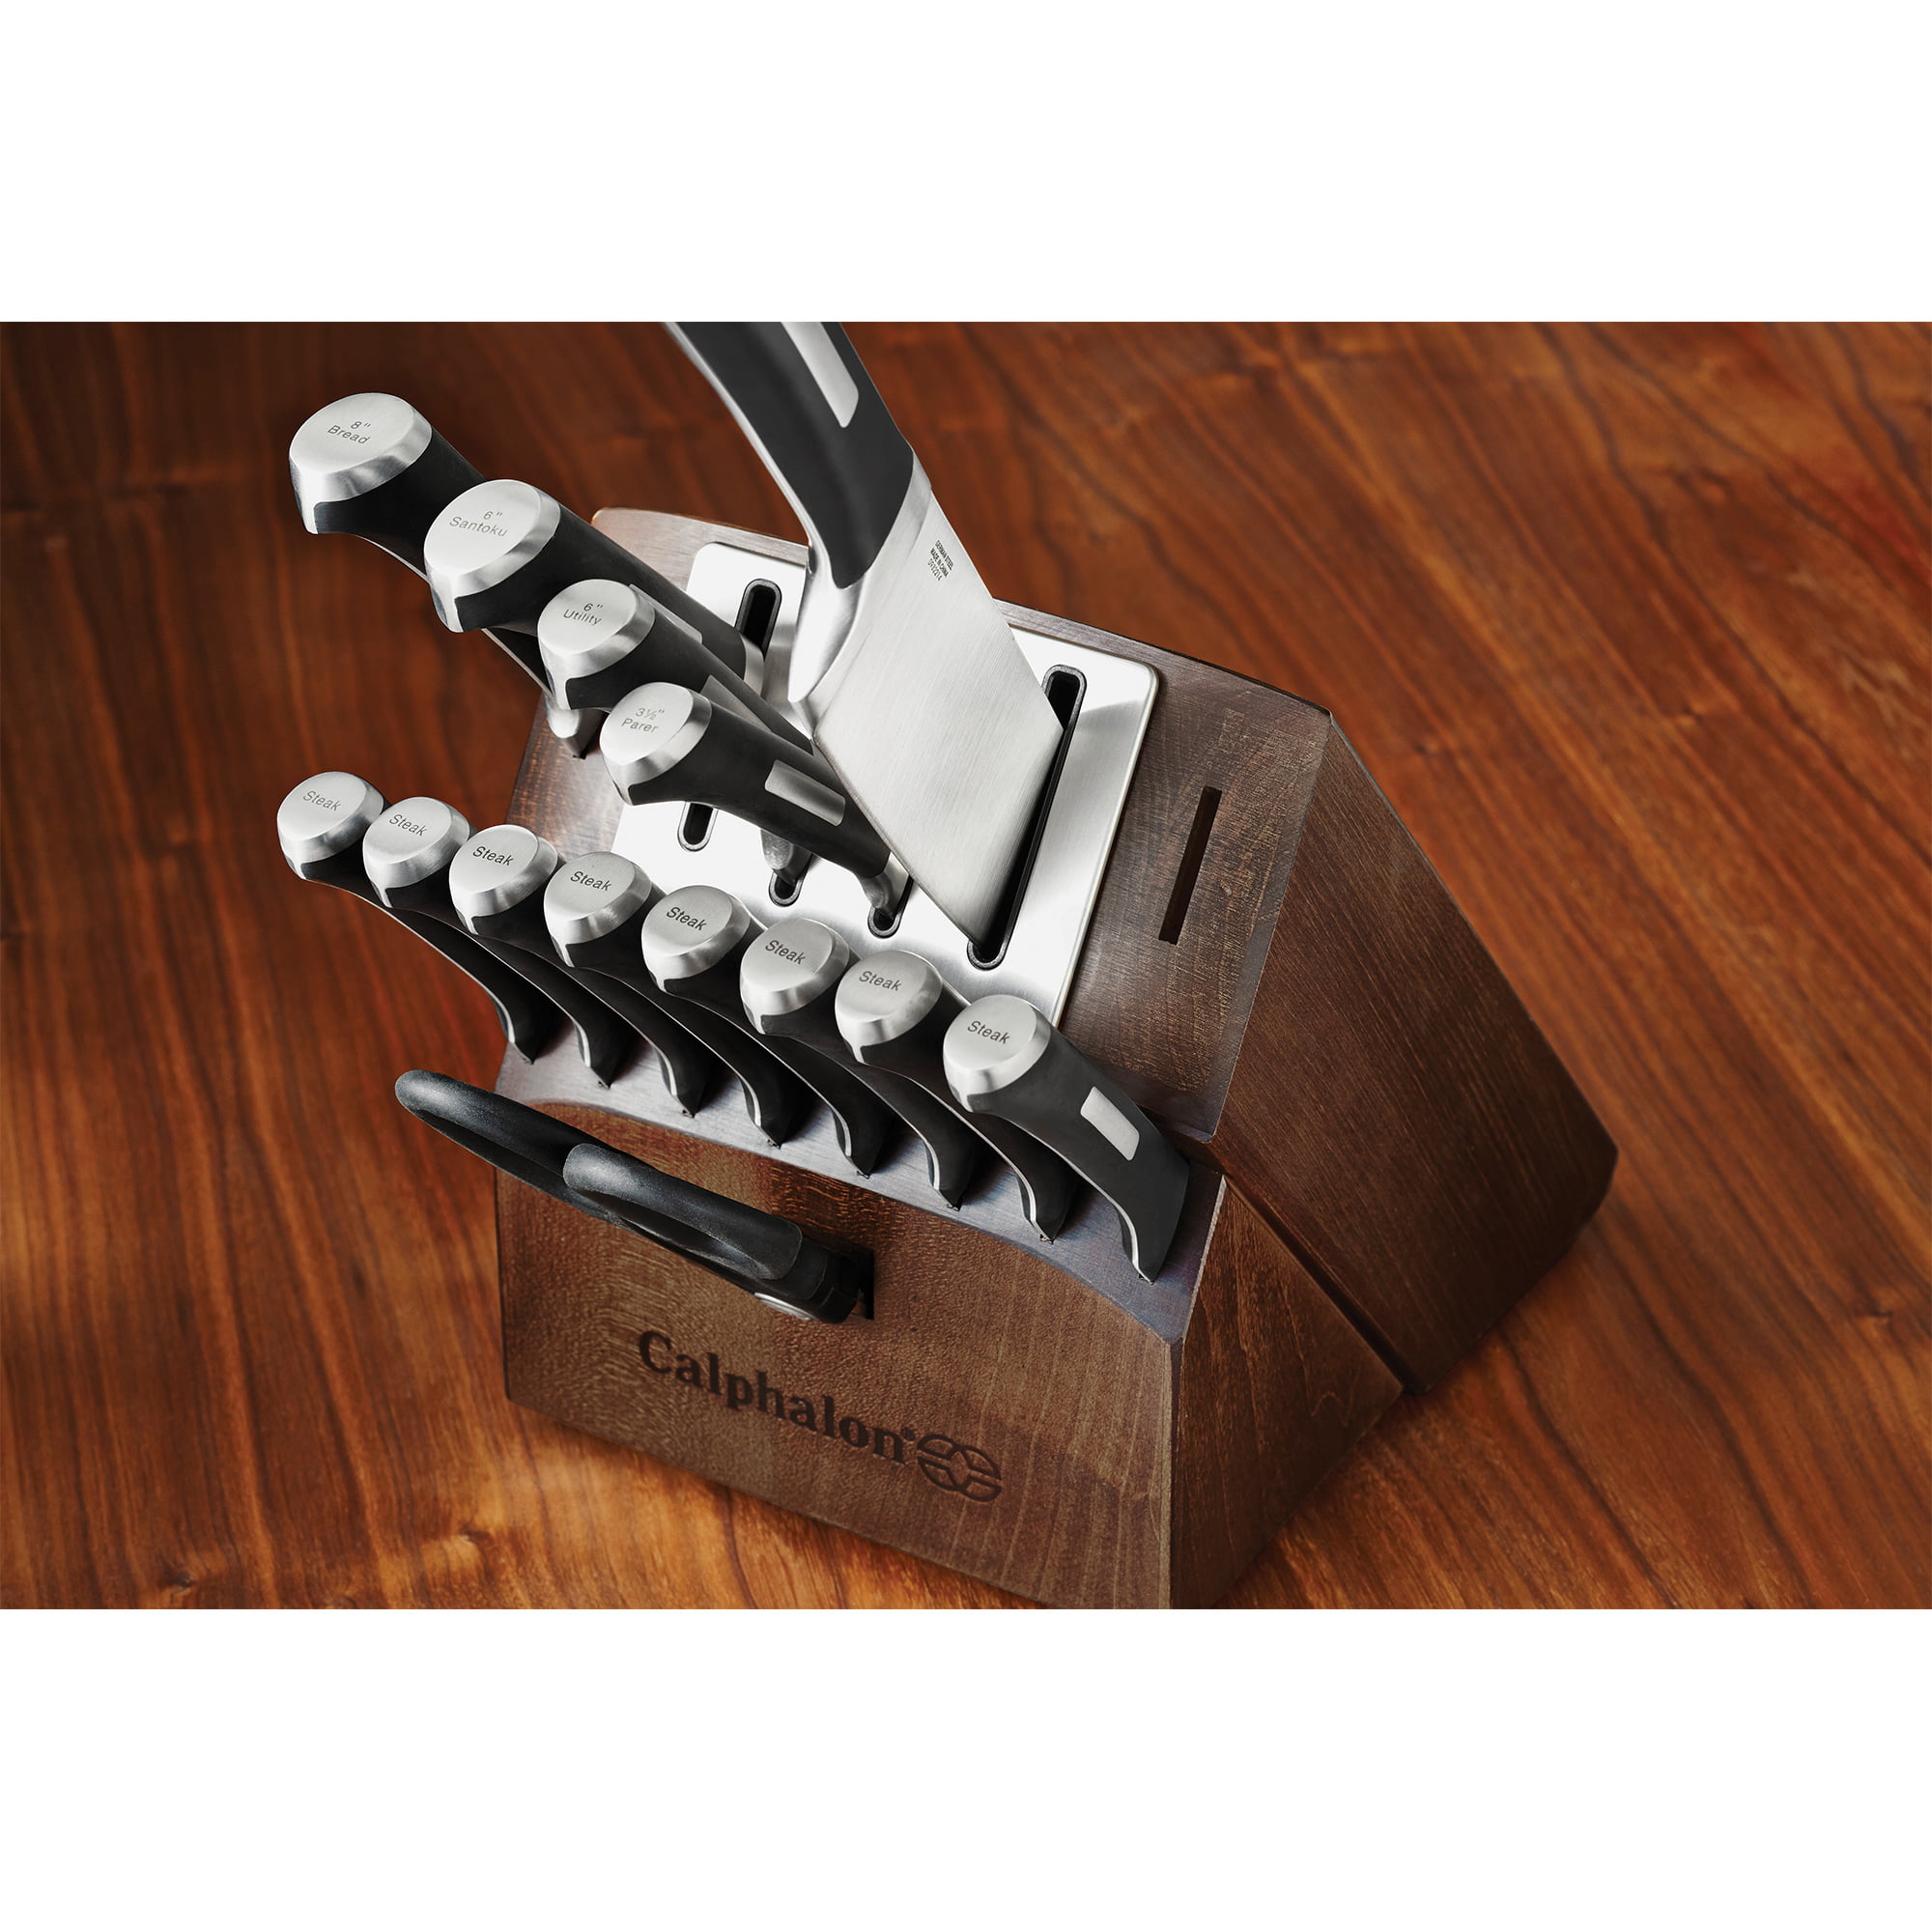 Calphalon Classic 15-Piece Self-Sharpening Cutler Set 1932932